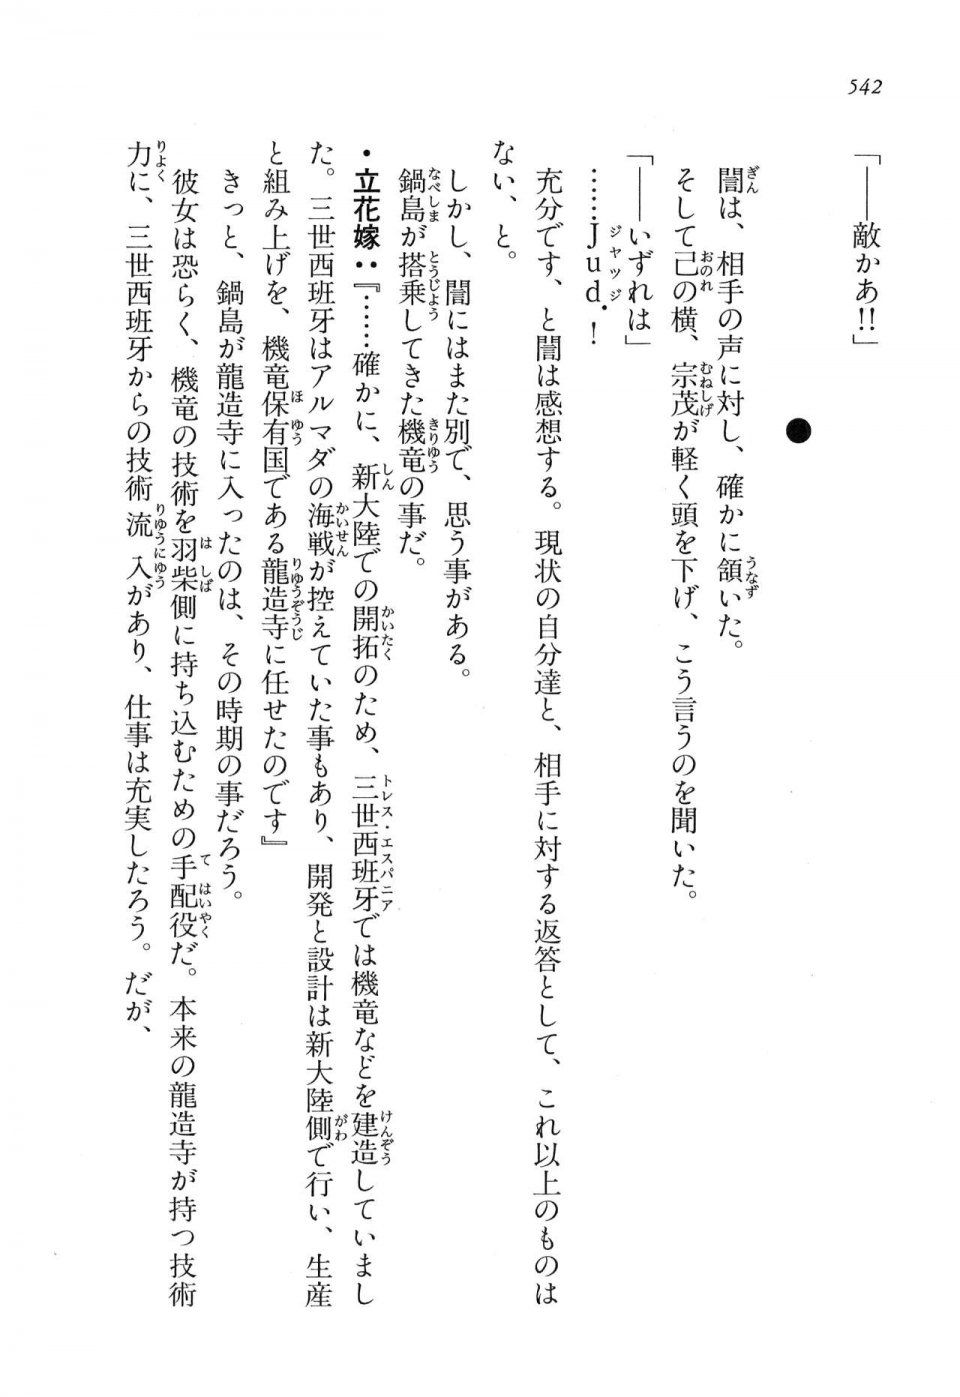 Kyoukai Senjou no Horizon LN Vol 16(7A) - Photo #542